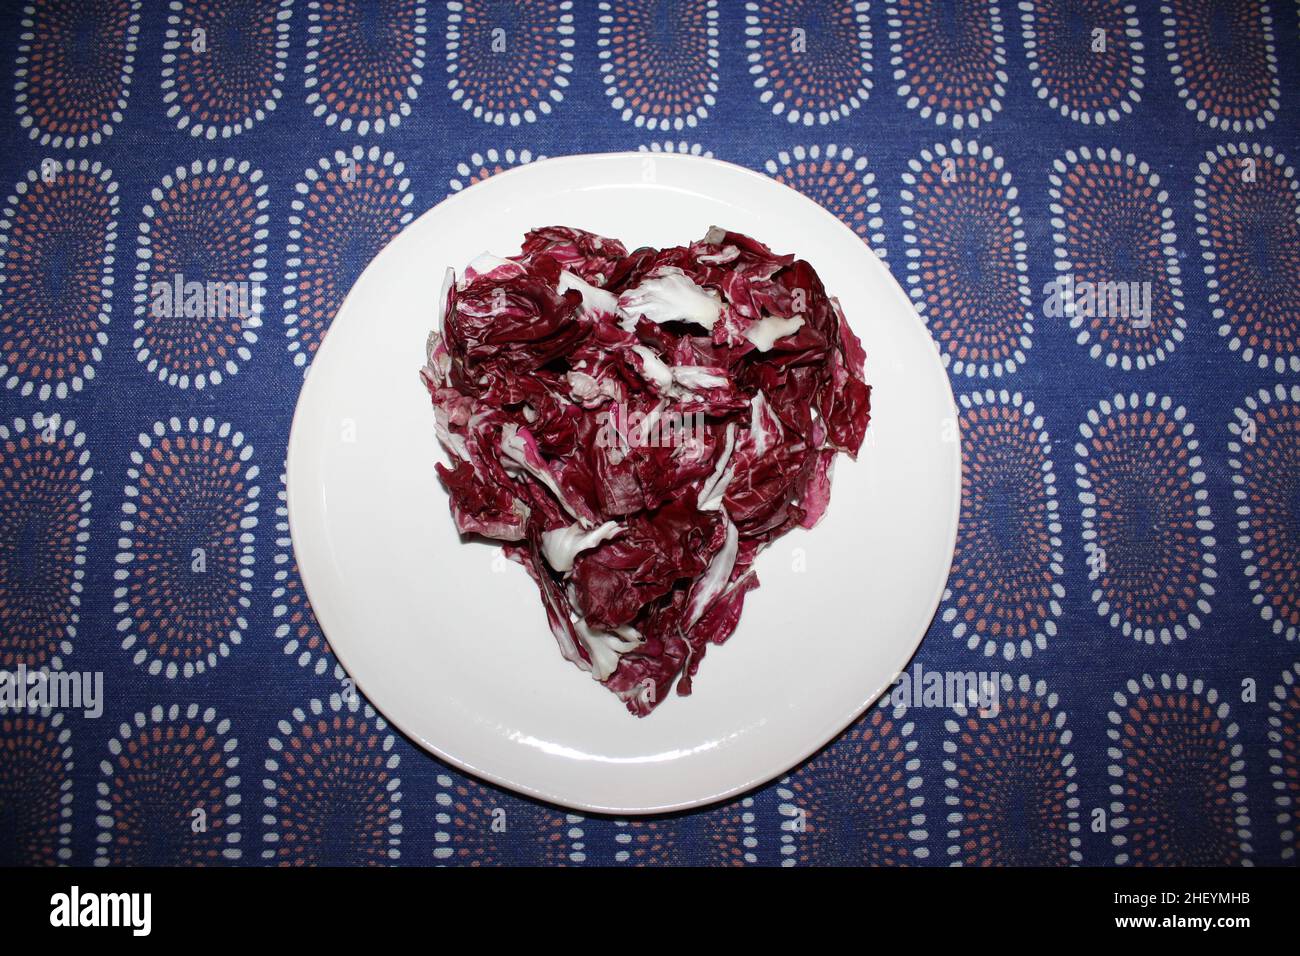 Un coeur violet de radicchio italien sur un plat blanc Banque D'Images